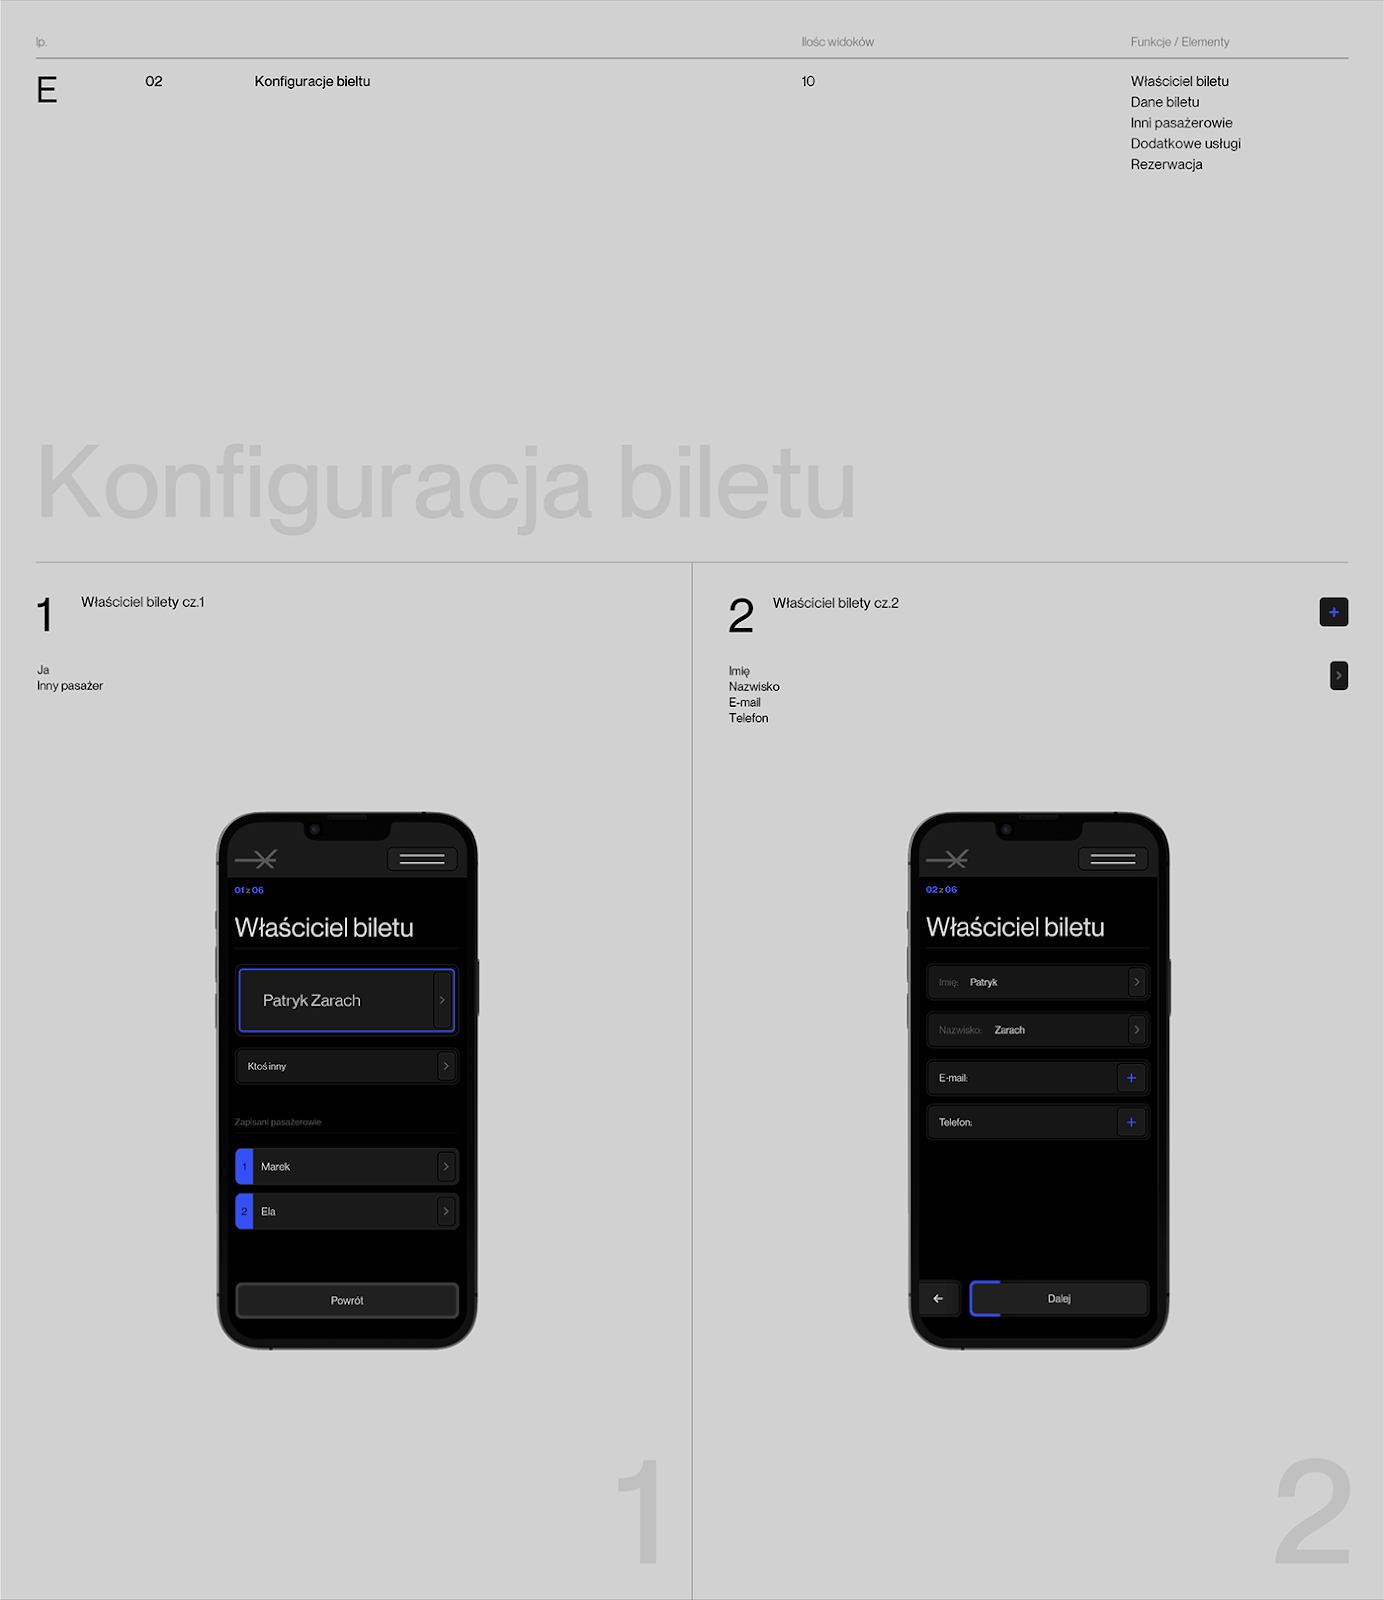 app design black Icon mobile Mobile app UI ui design UI/UX ux UX design